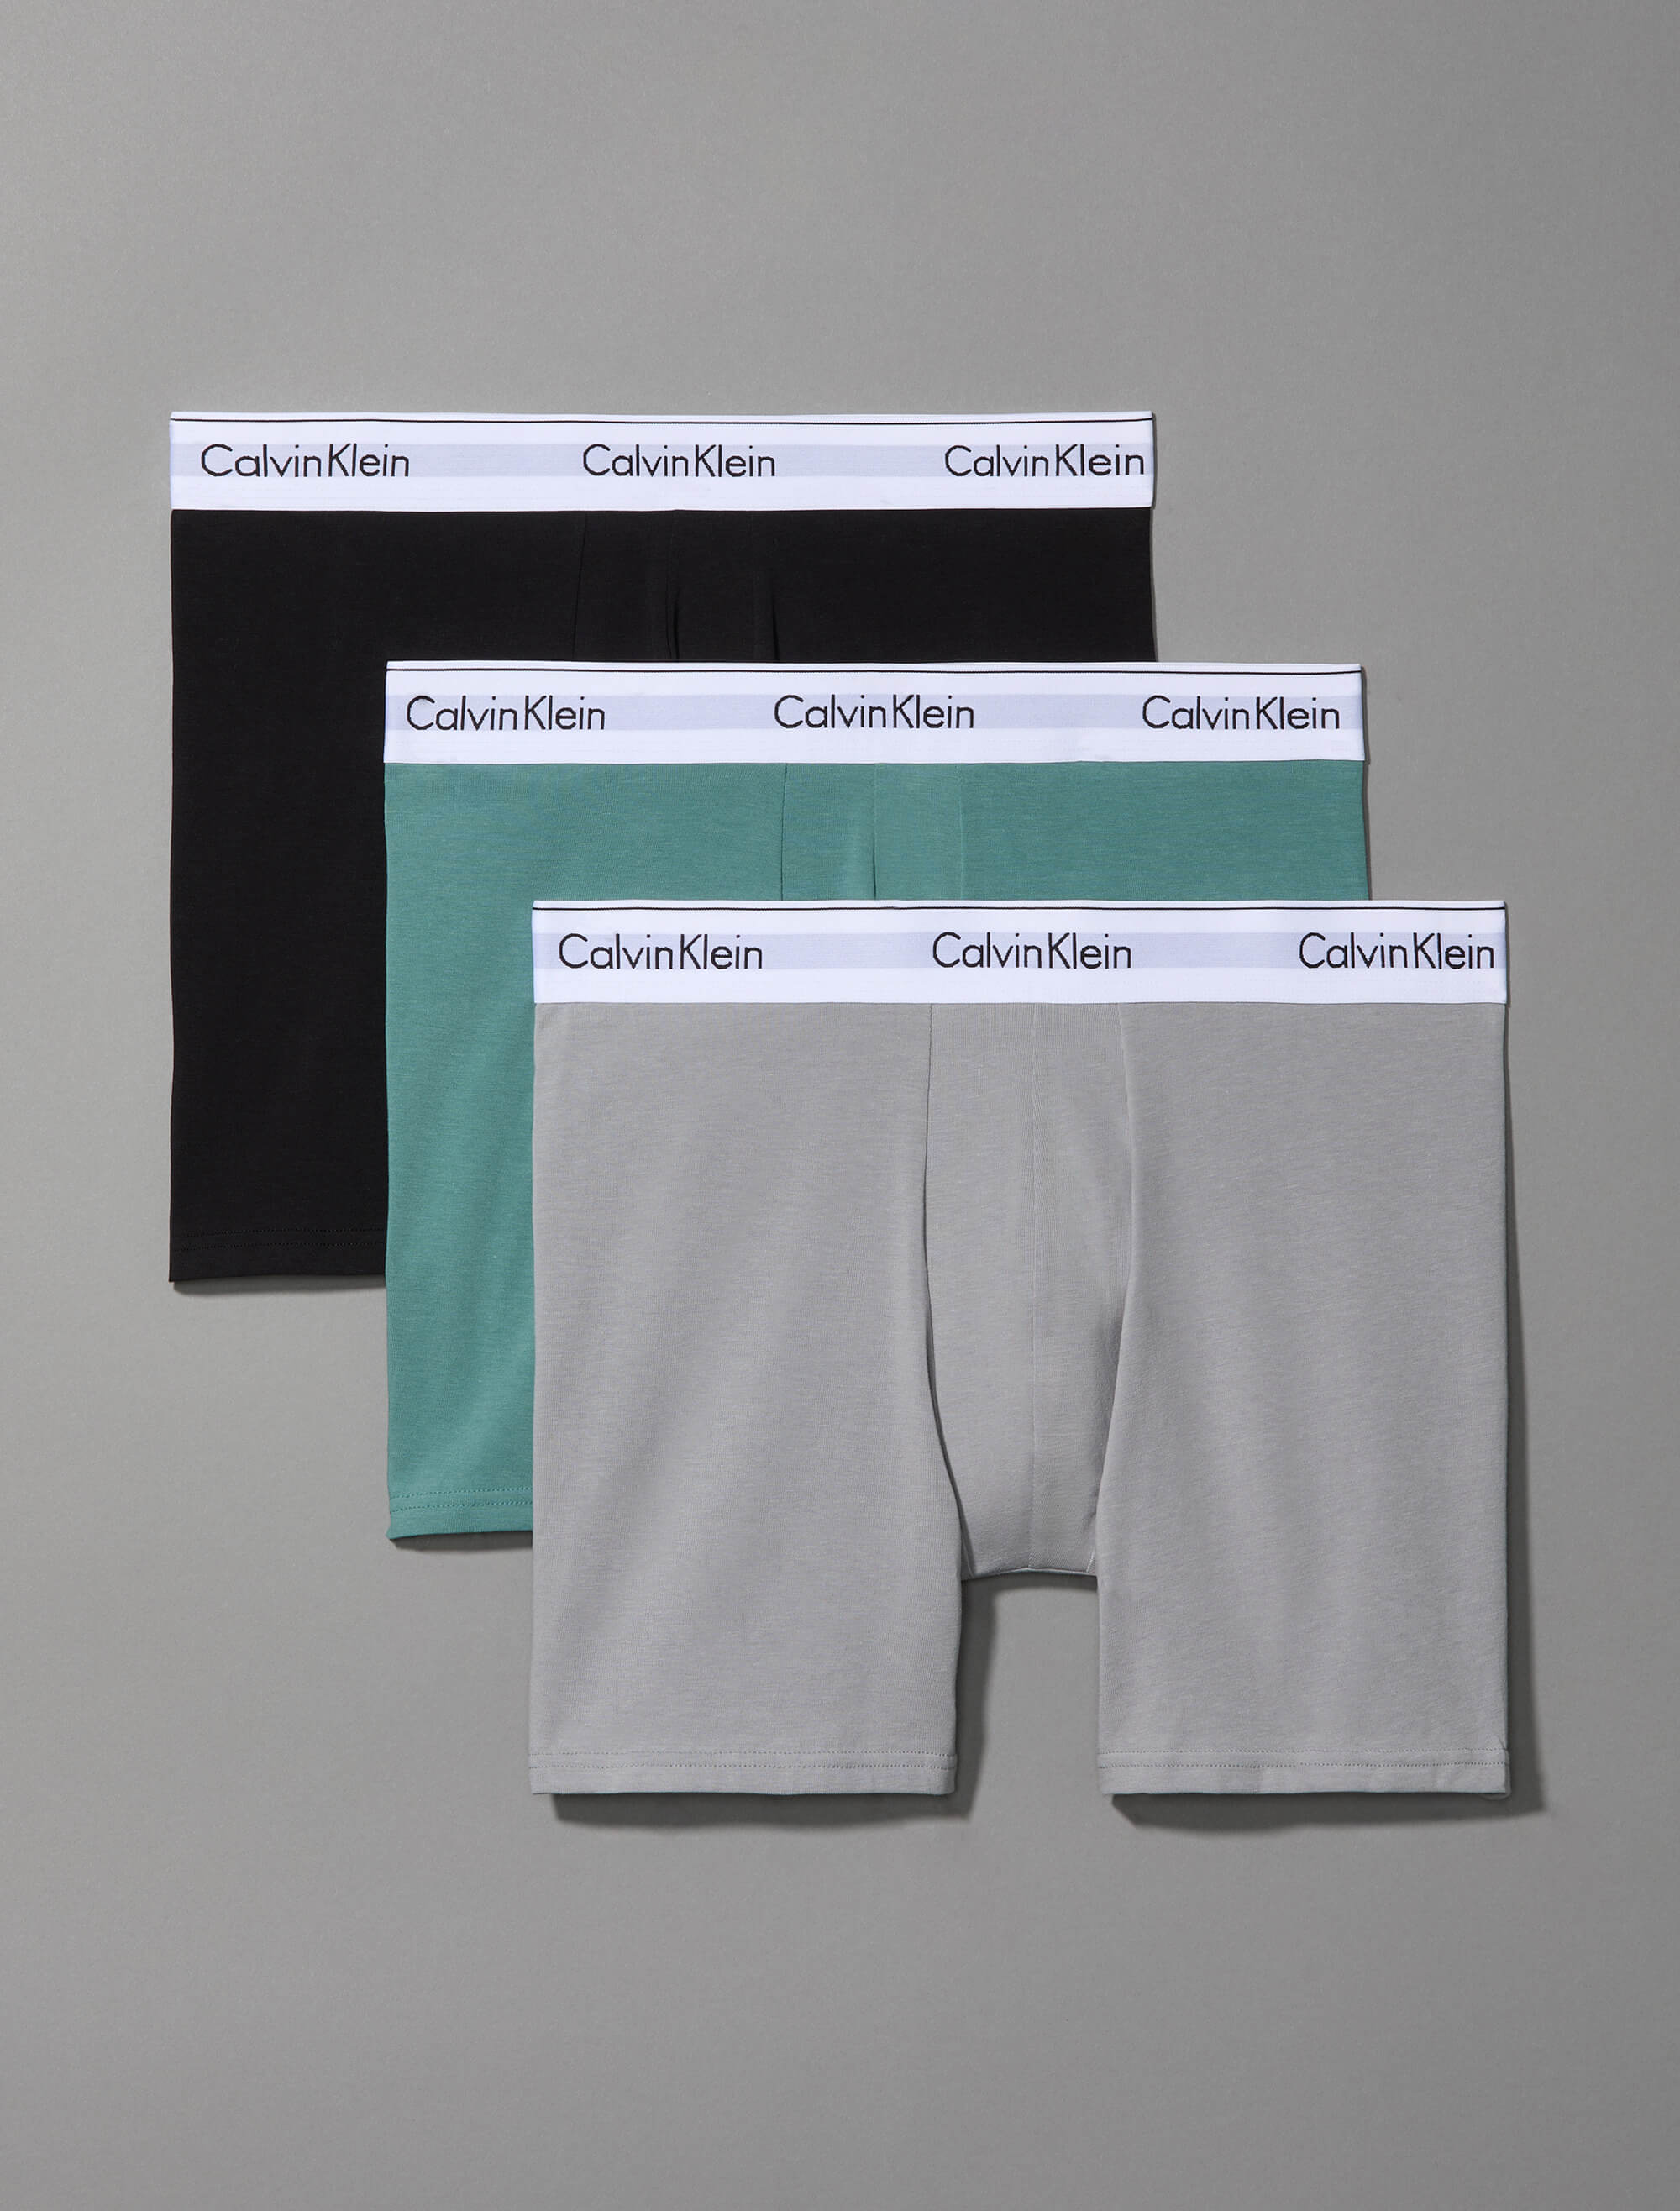 Bóxers Calvin Klein Modern Cotton Paquete de 3 Hombre Multicolor